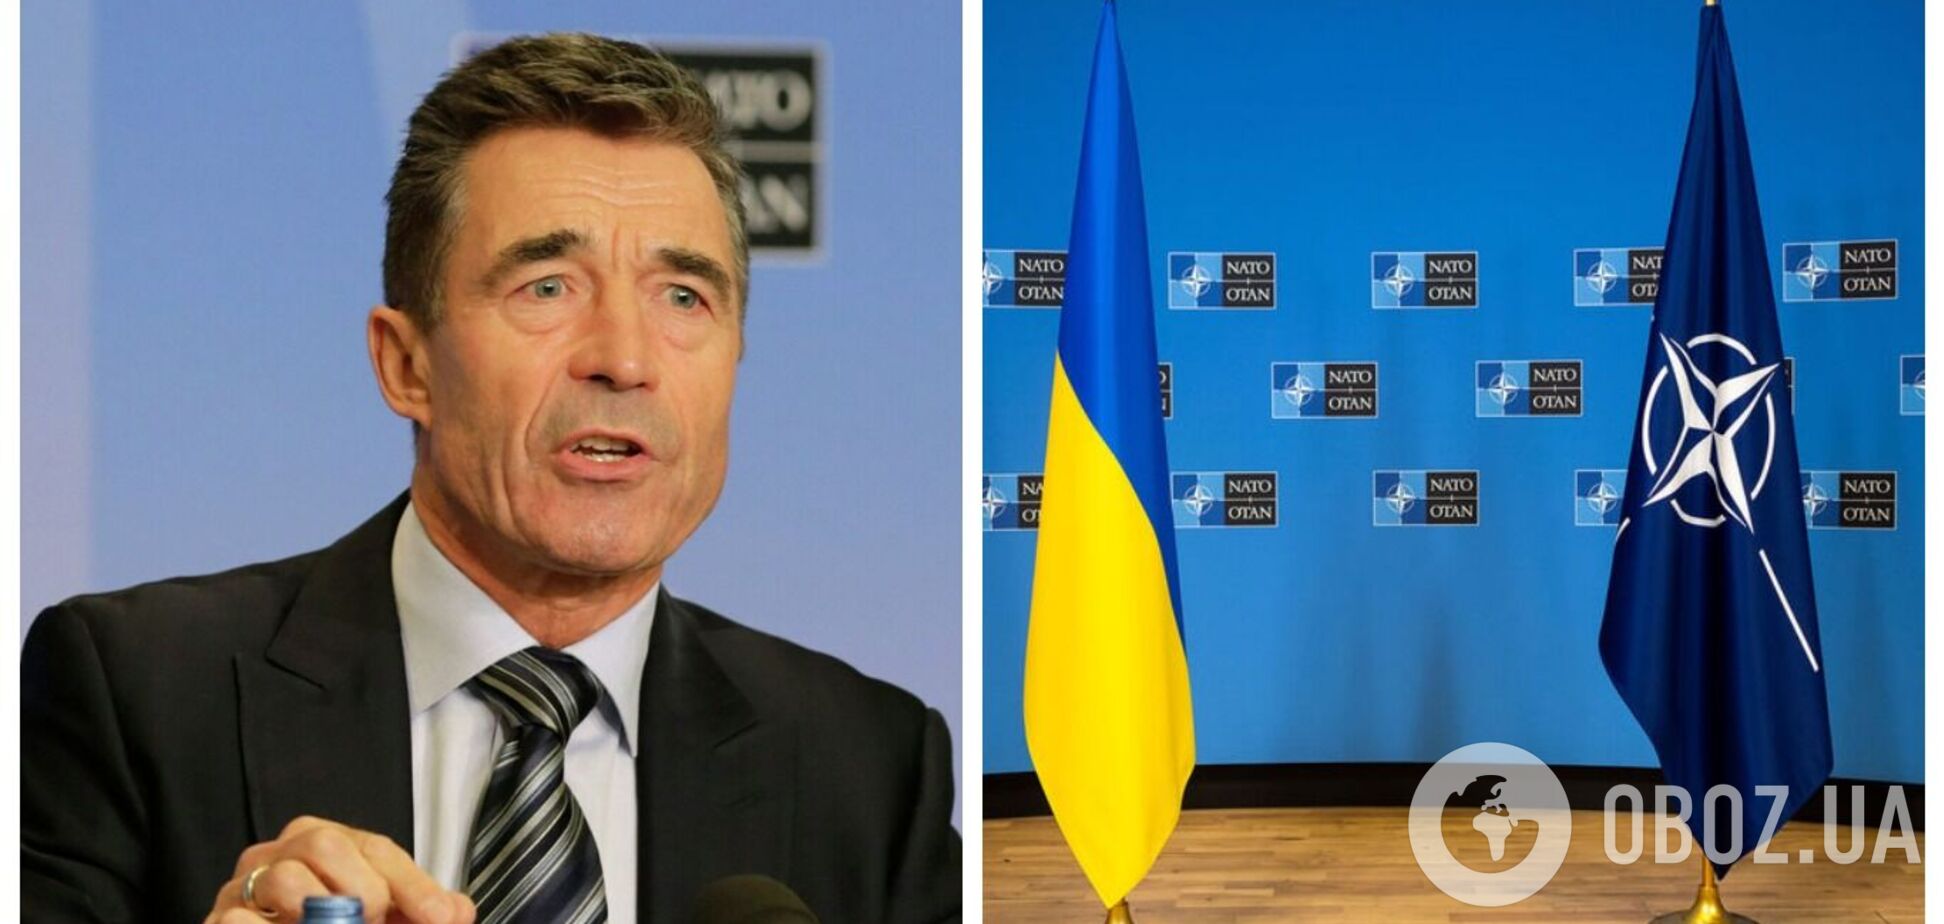 Приглашение Украины в НАТО может способствовать обеспечению мира, – Расмуссен